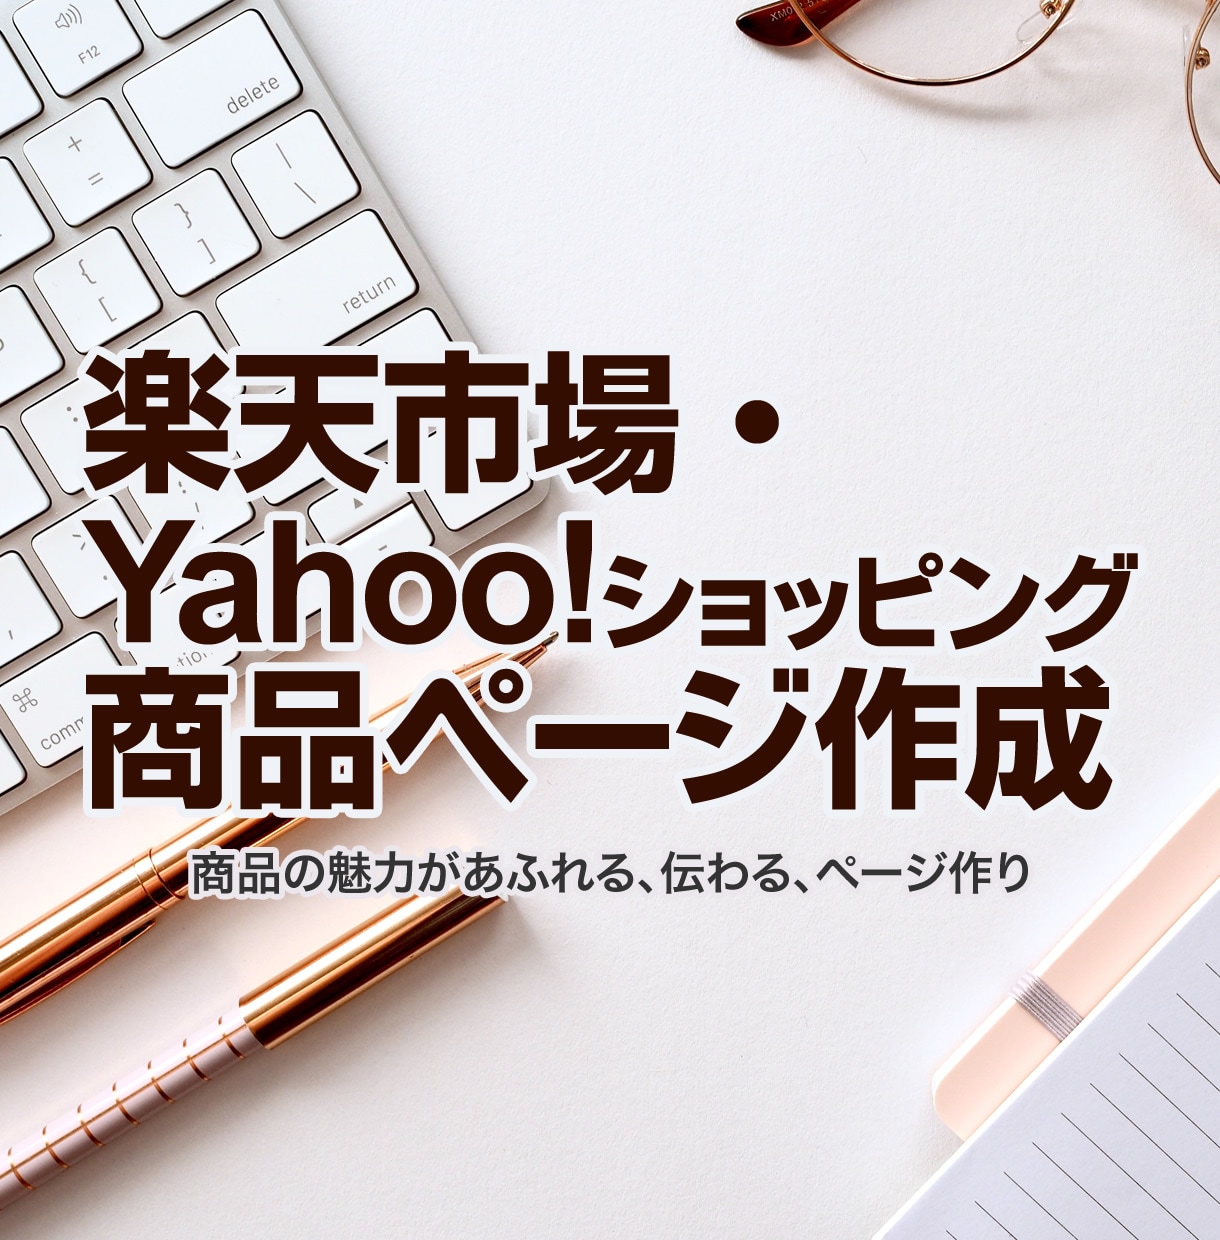 楽天市場・Yahoo!の商品ページ作成します 「売る現場」を知るデザイナーが商品の魅力を最大限に伝えます！ イメージ1